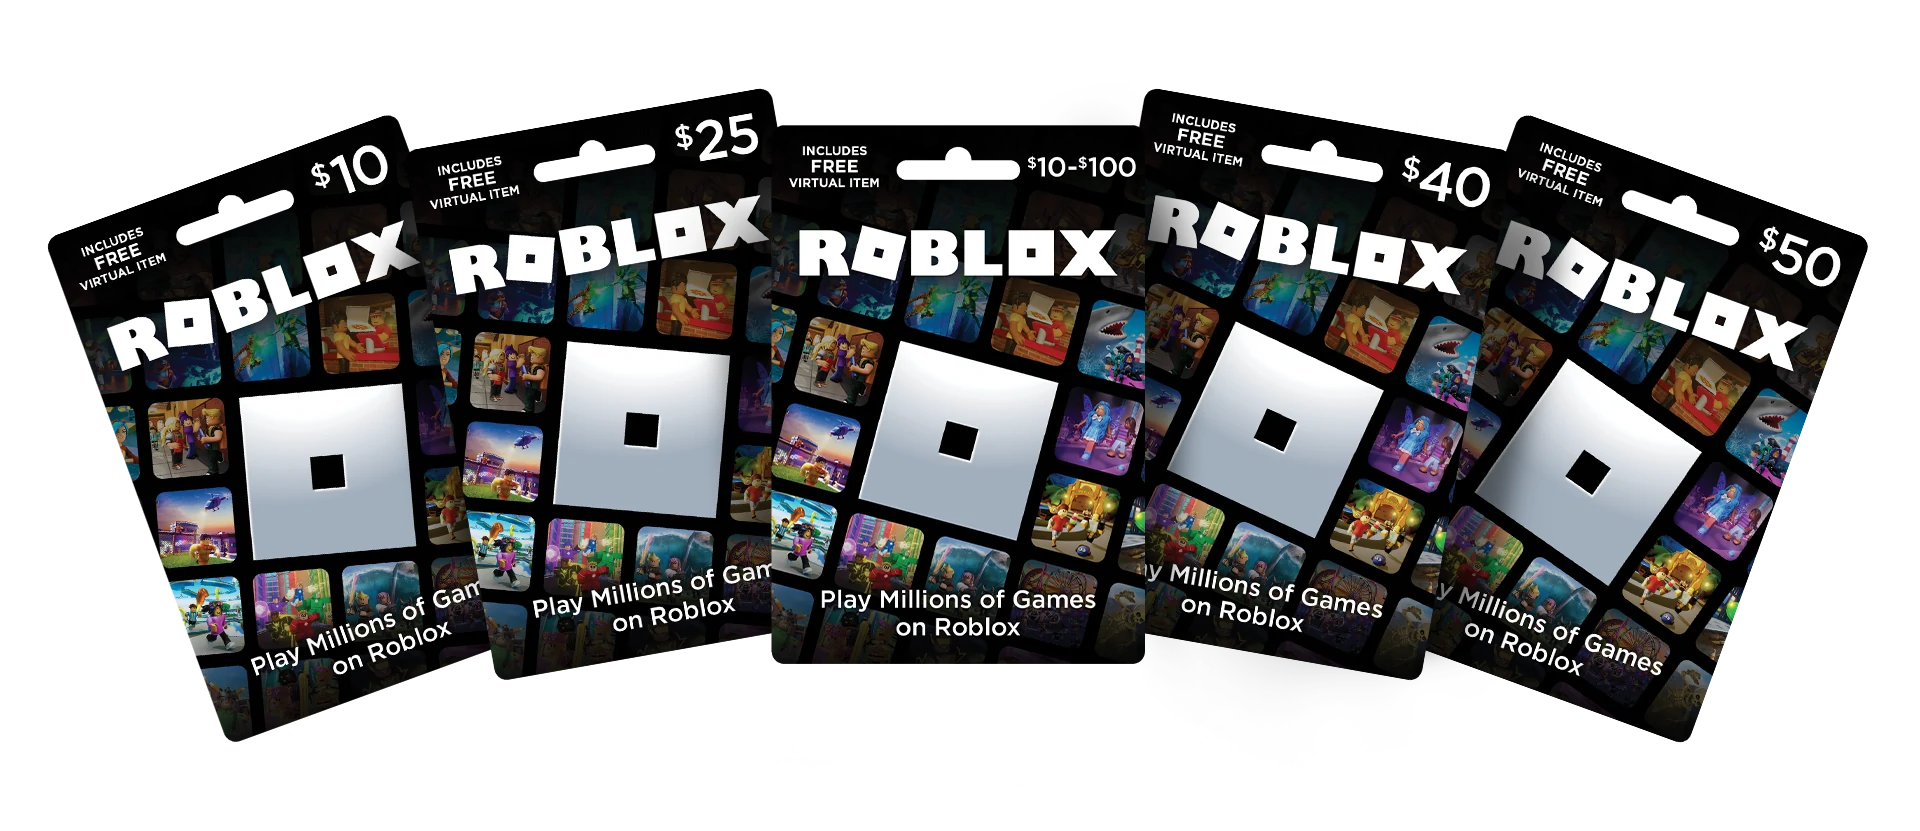 Carte roblox 20€, combien de Robux obtiendrez-vous dans le jeu